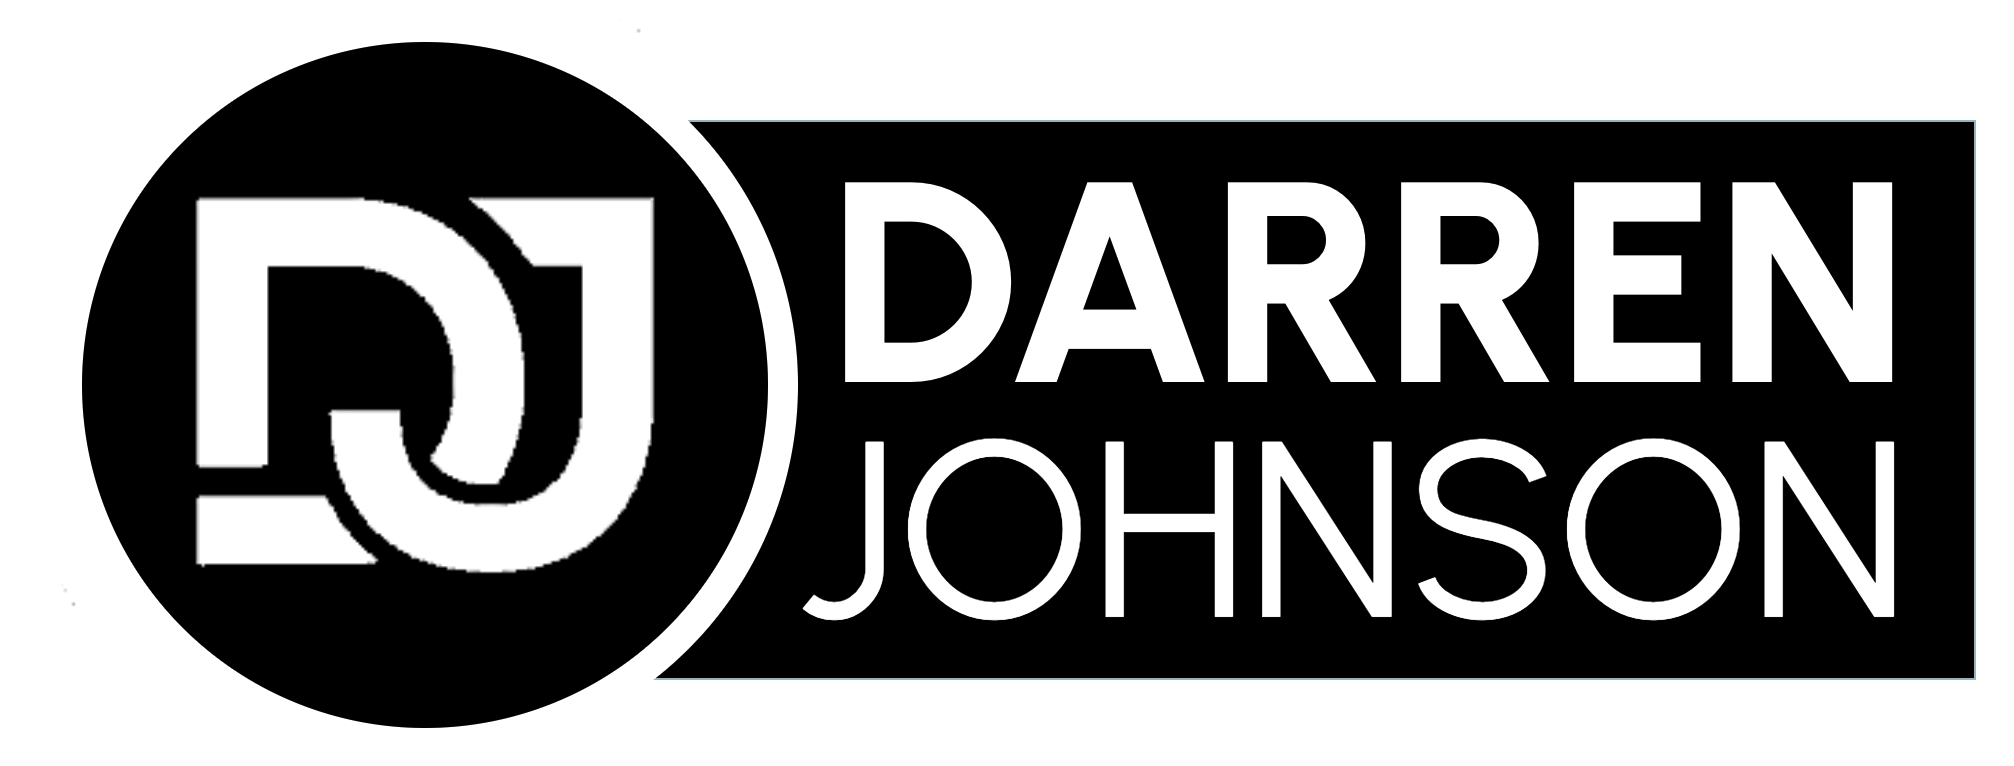 Get Darren | Darren Johnson Consulting